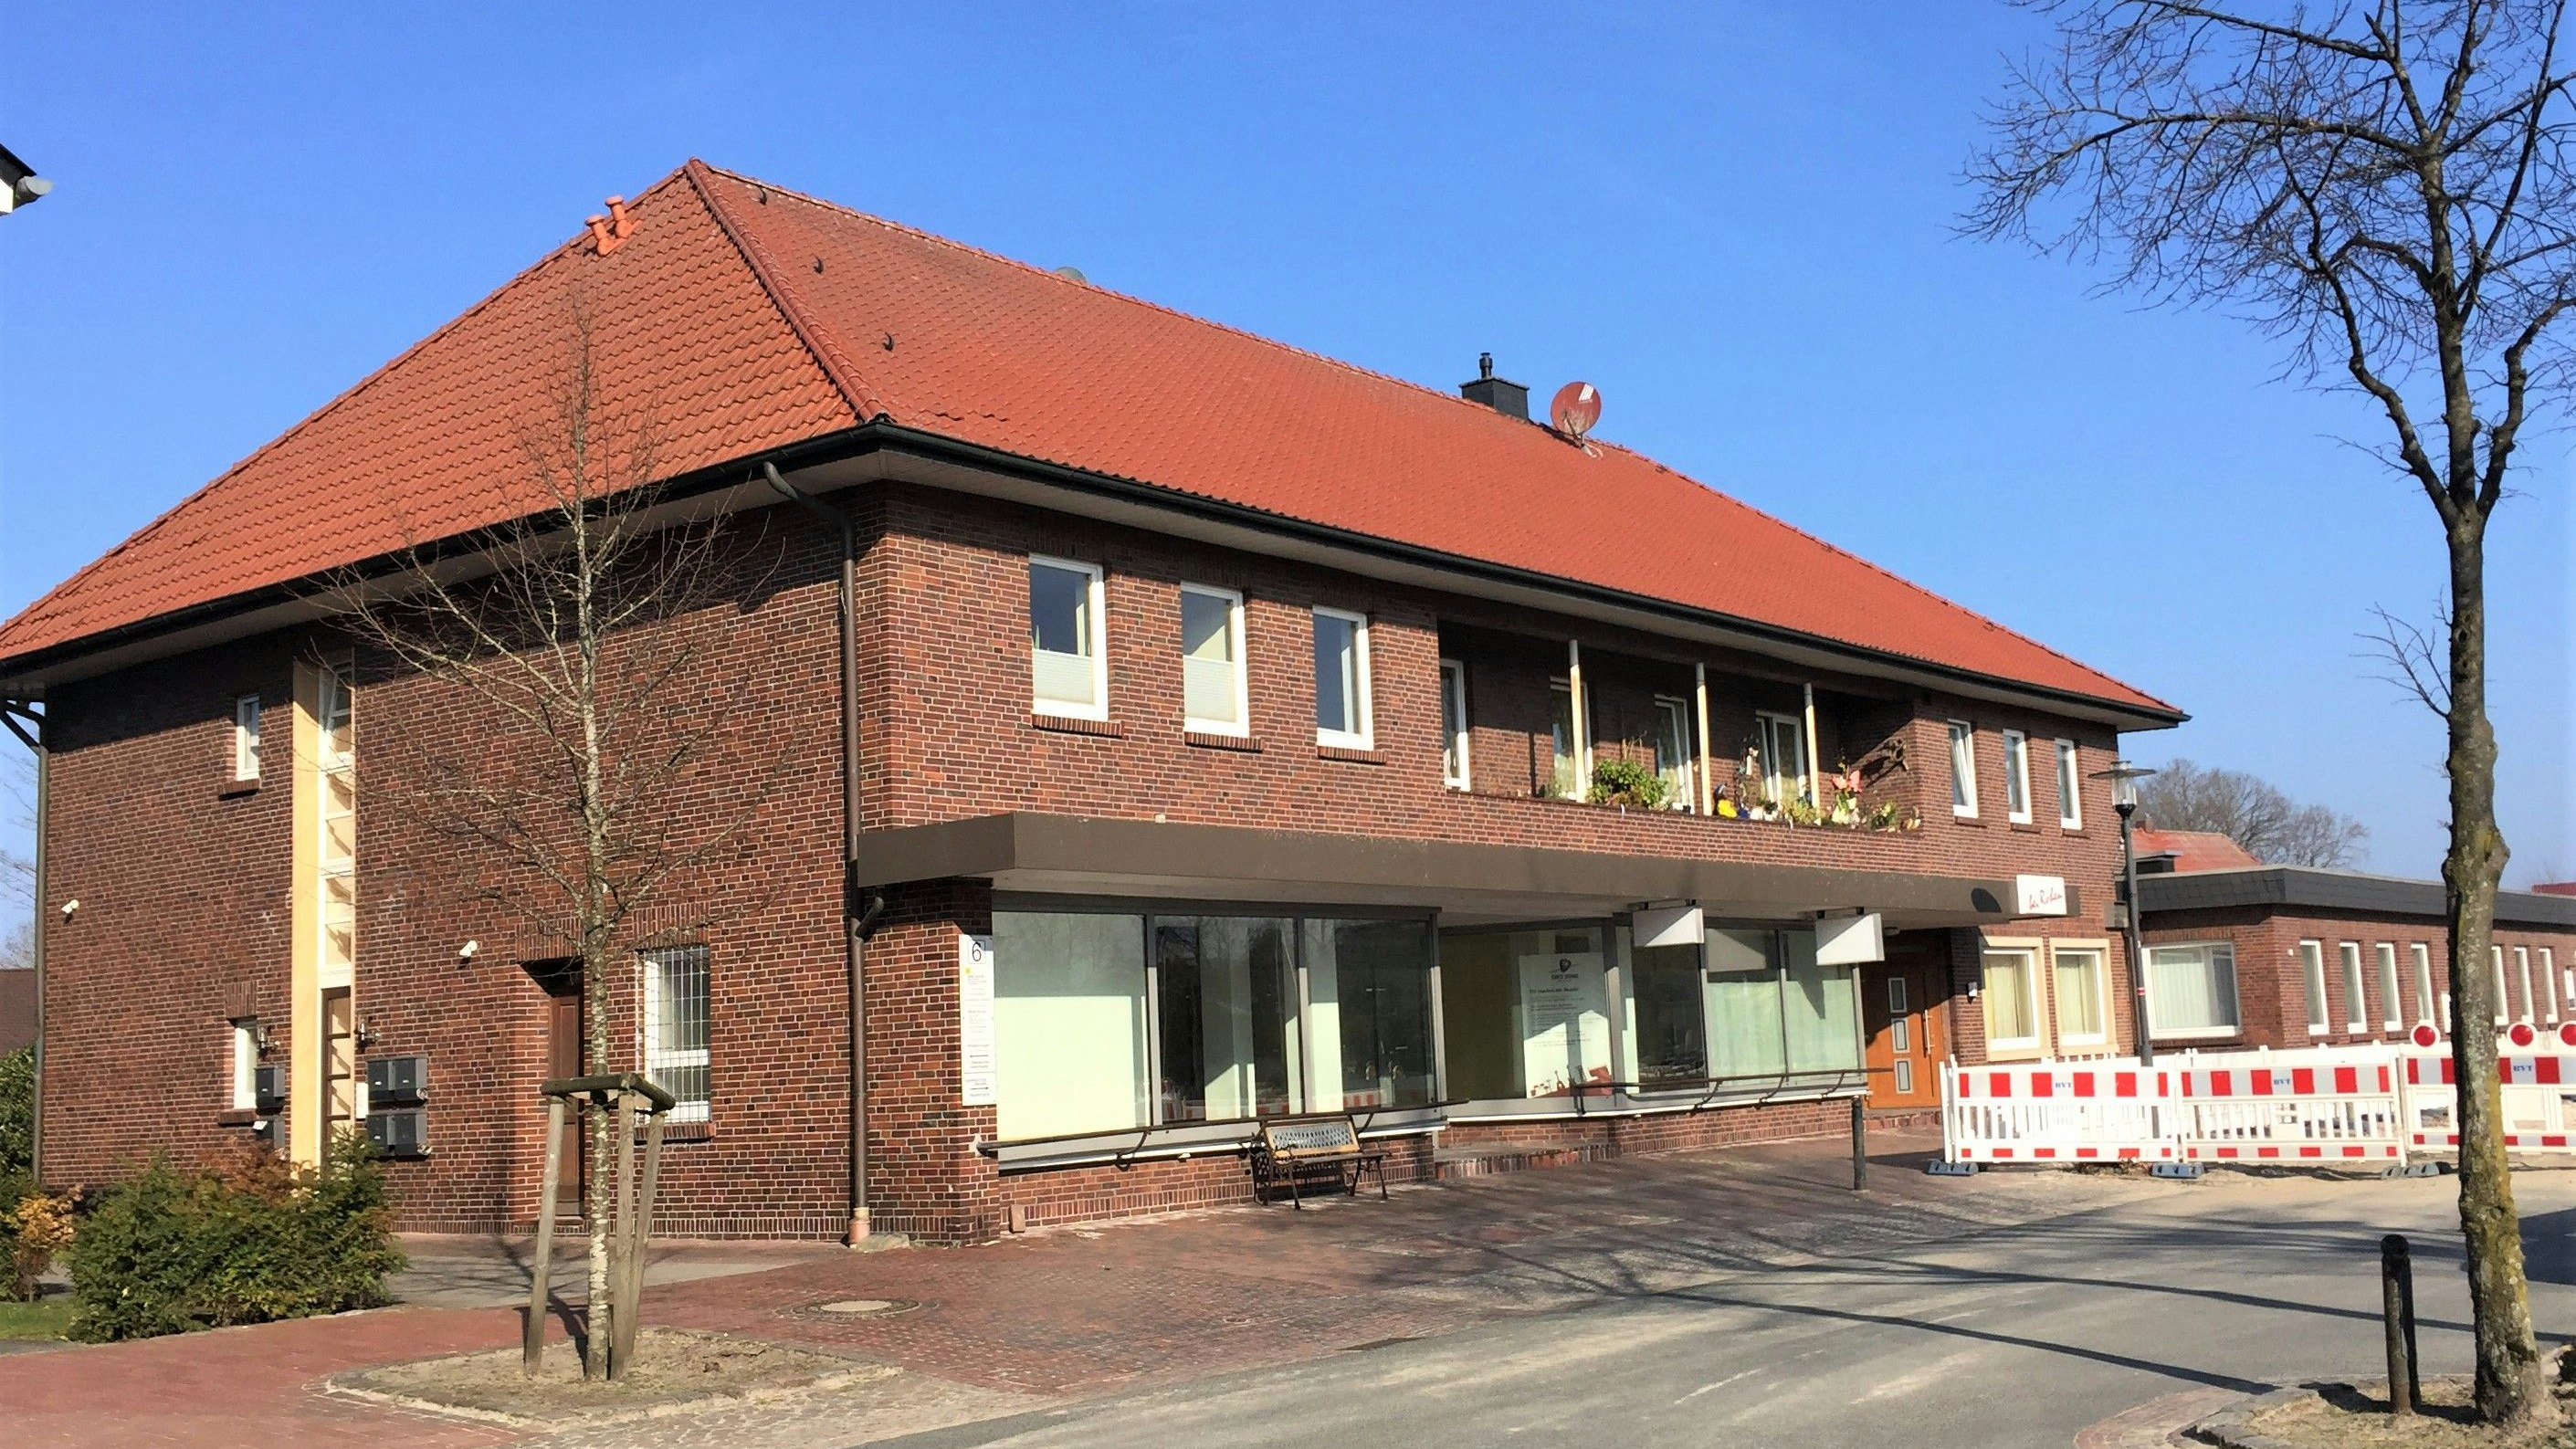 Langer Gebäudekomplex: Der Standort des Rohen-Hauses an der Straße "Am Kirchplatz" soll nun neu genutzt werden. Foto: Pille